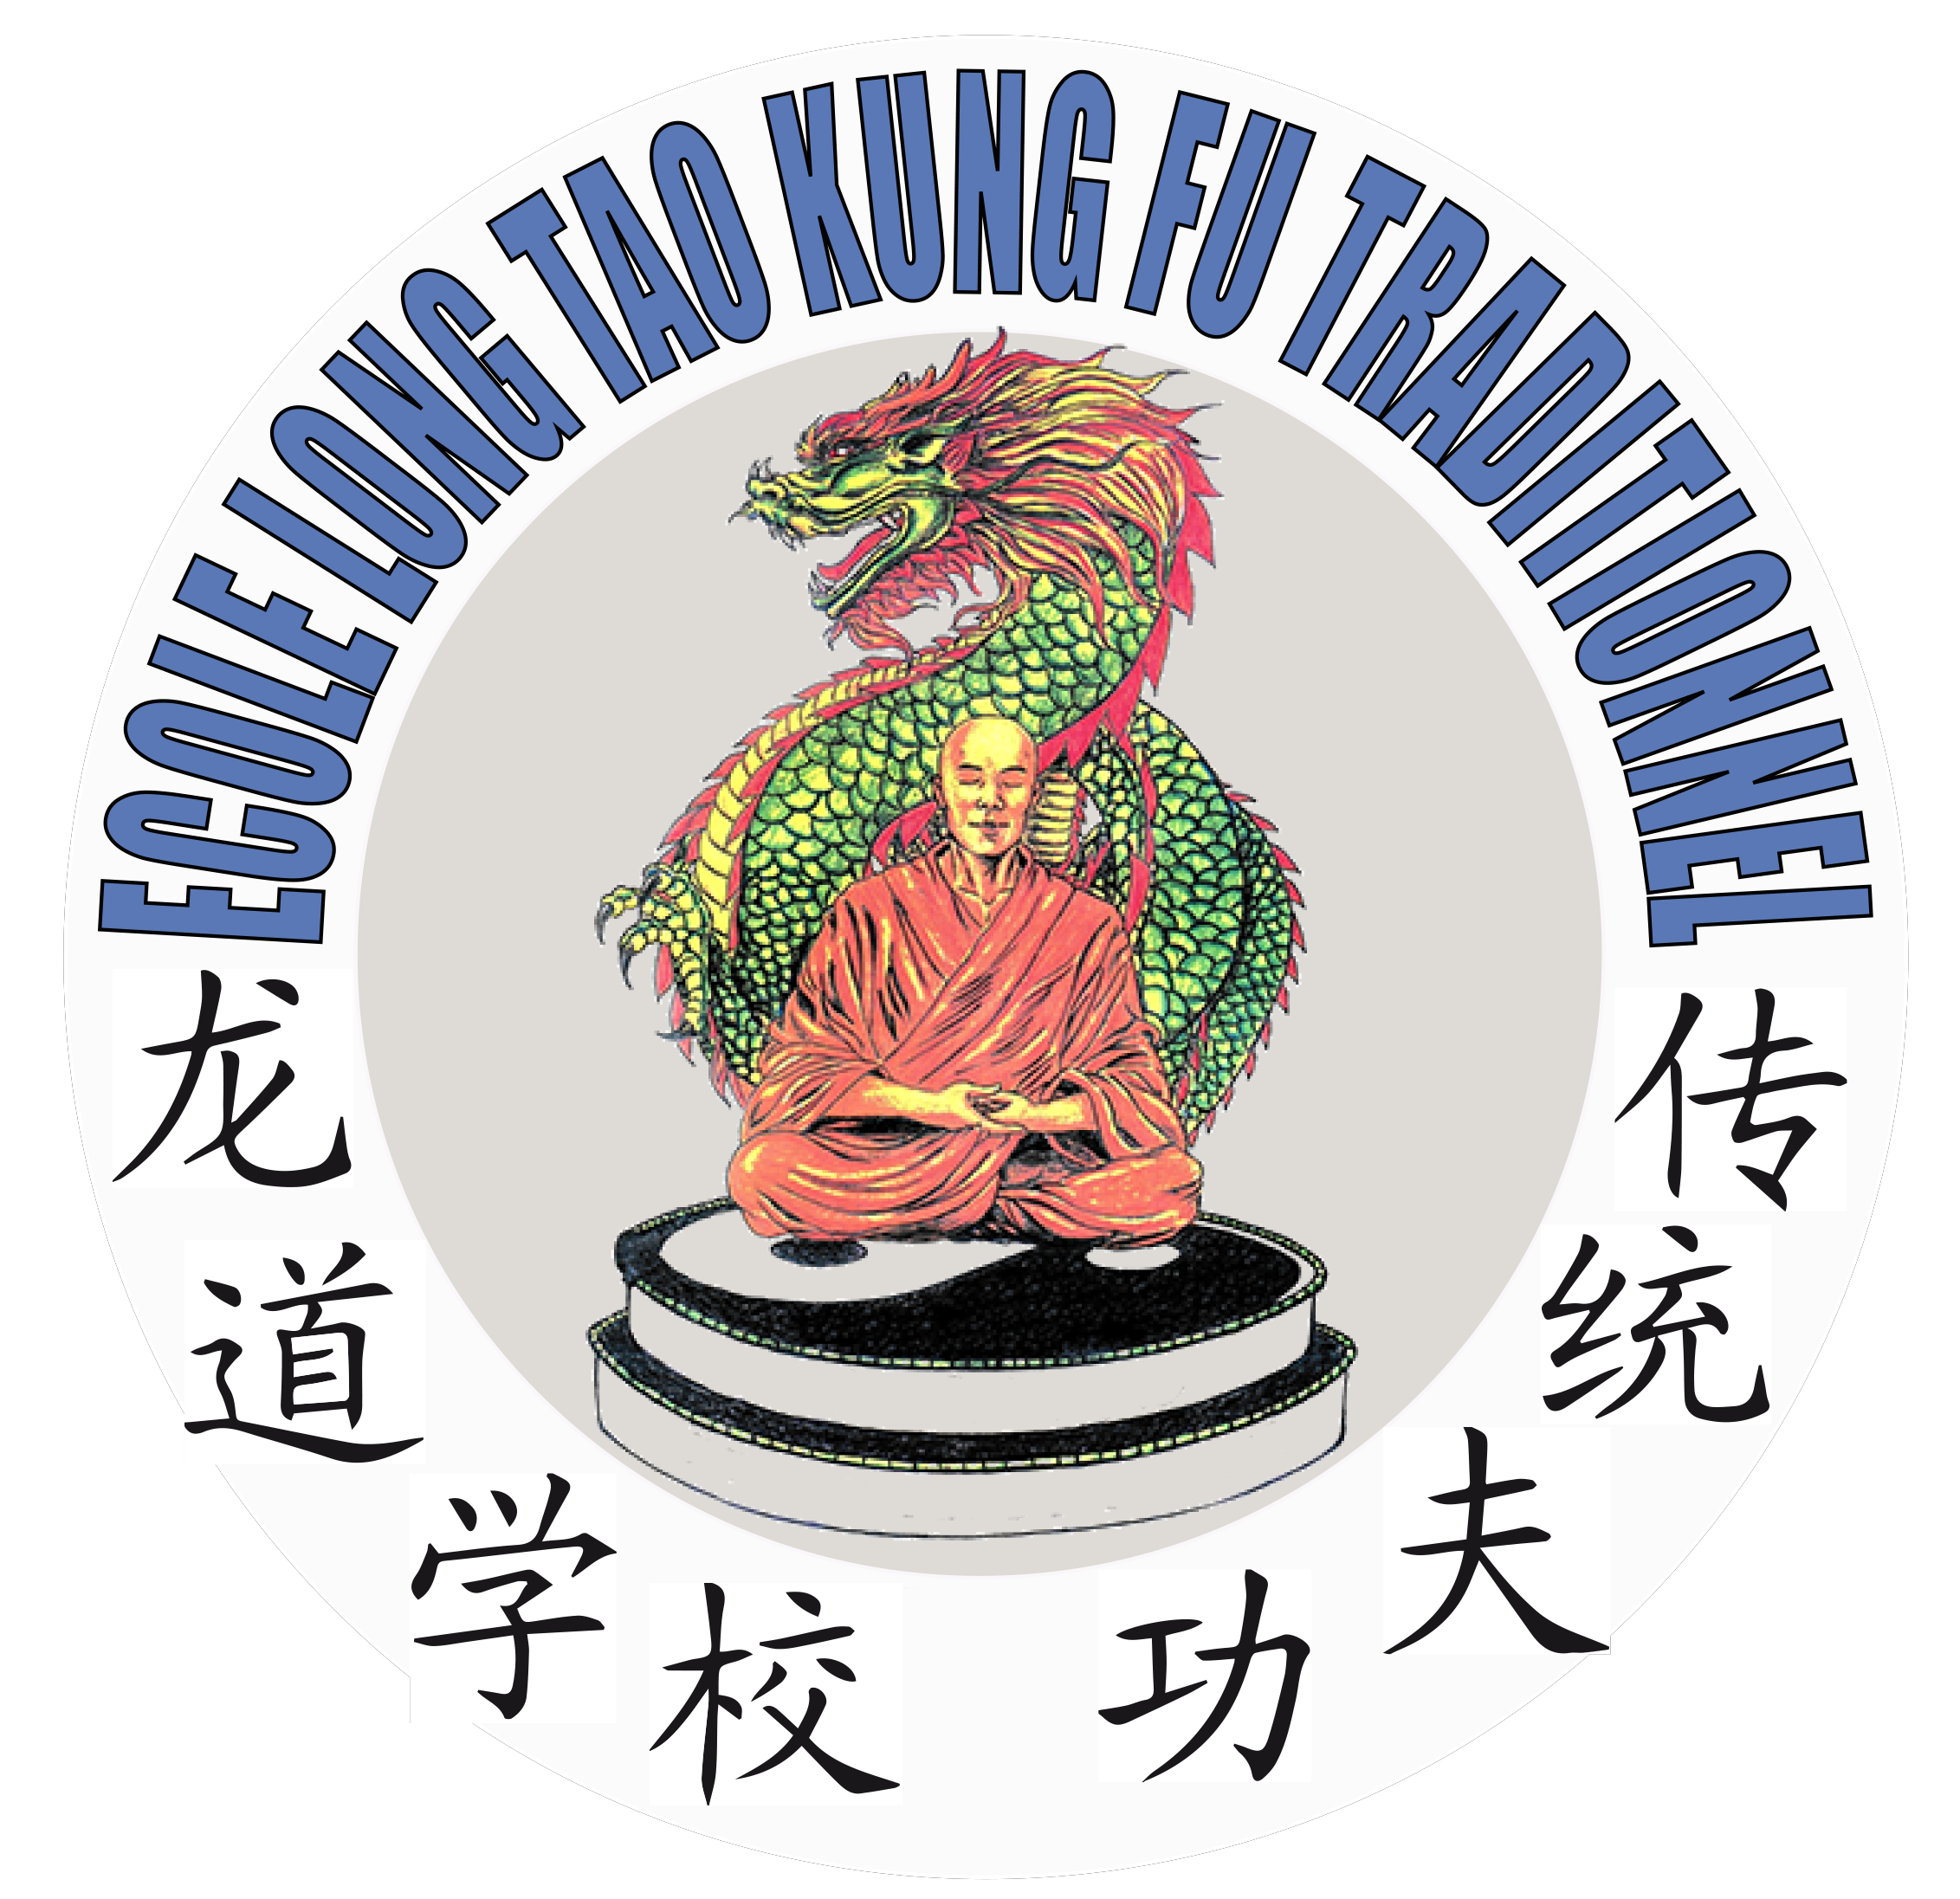 LongTao Kung Fu Wushu Toulouse